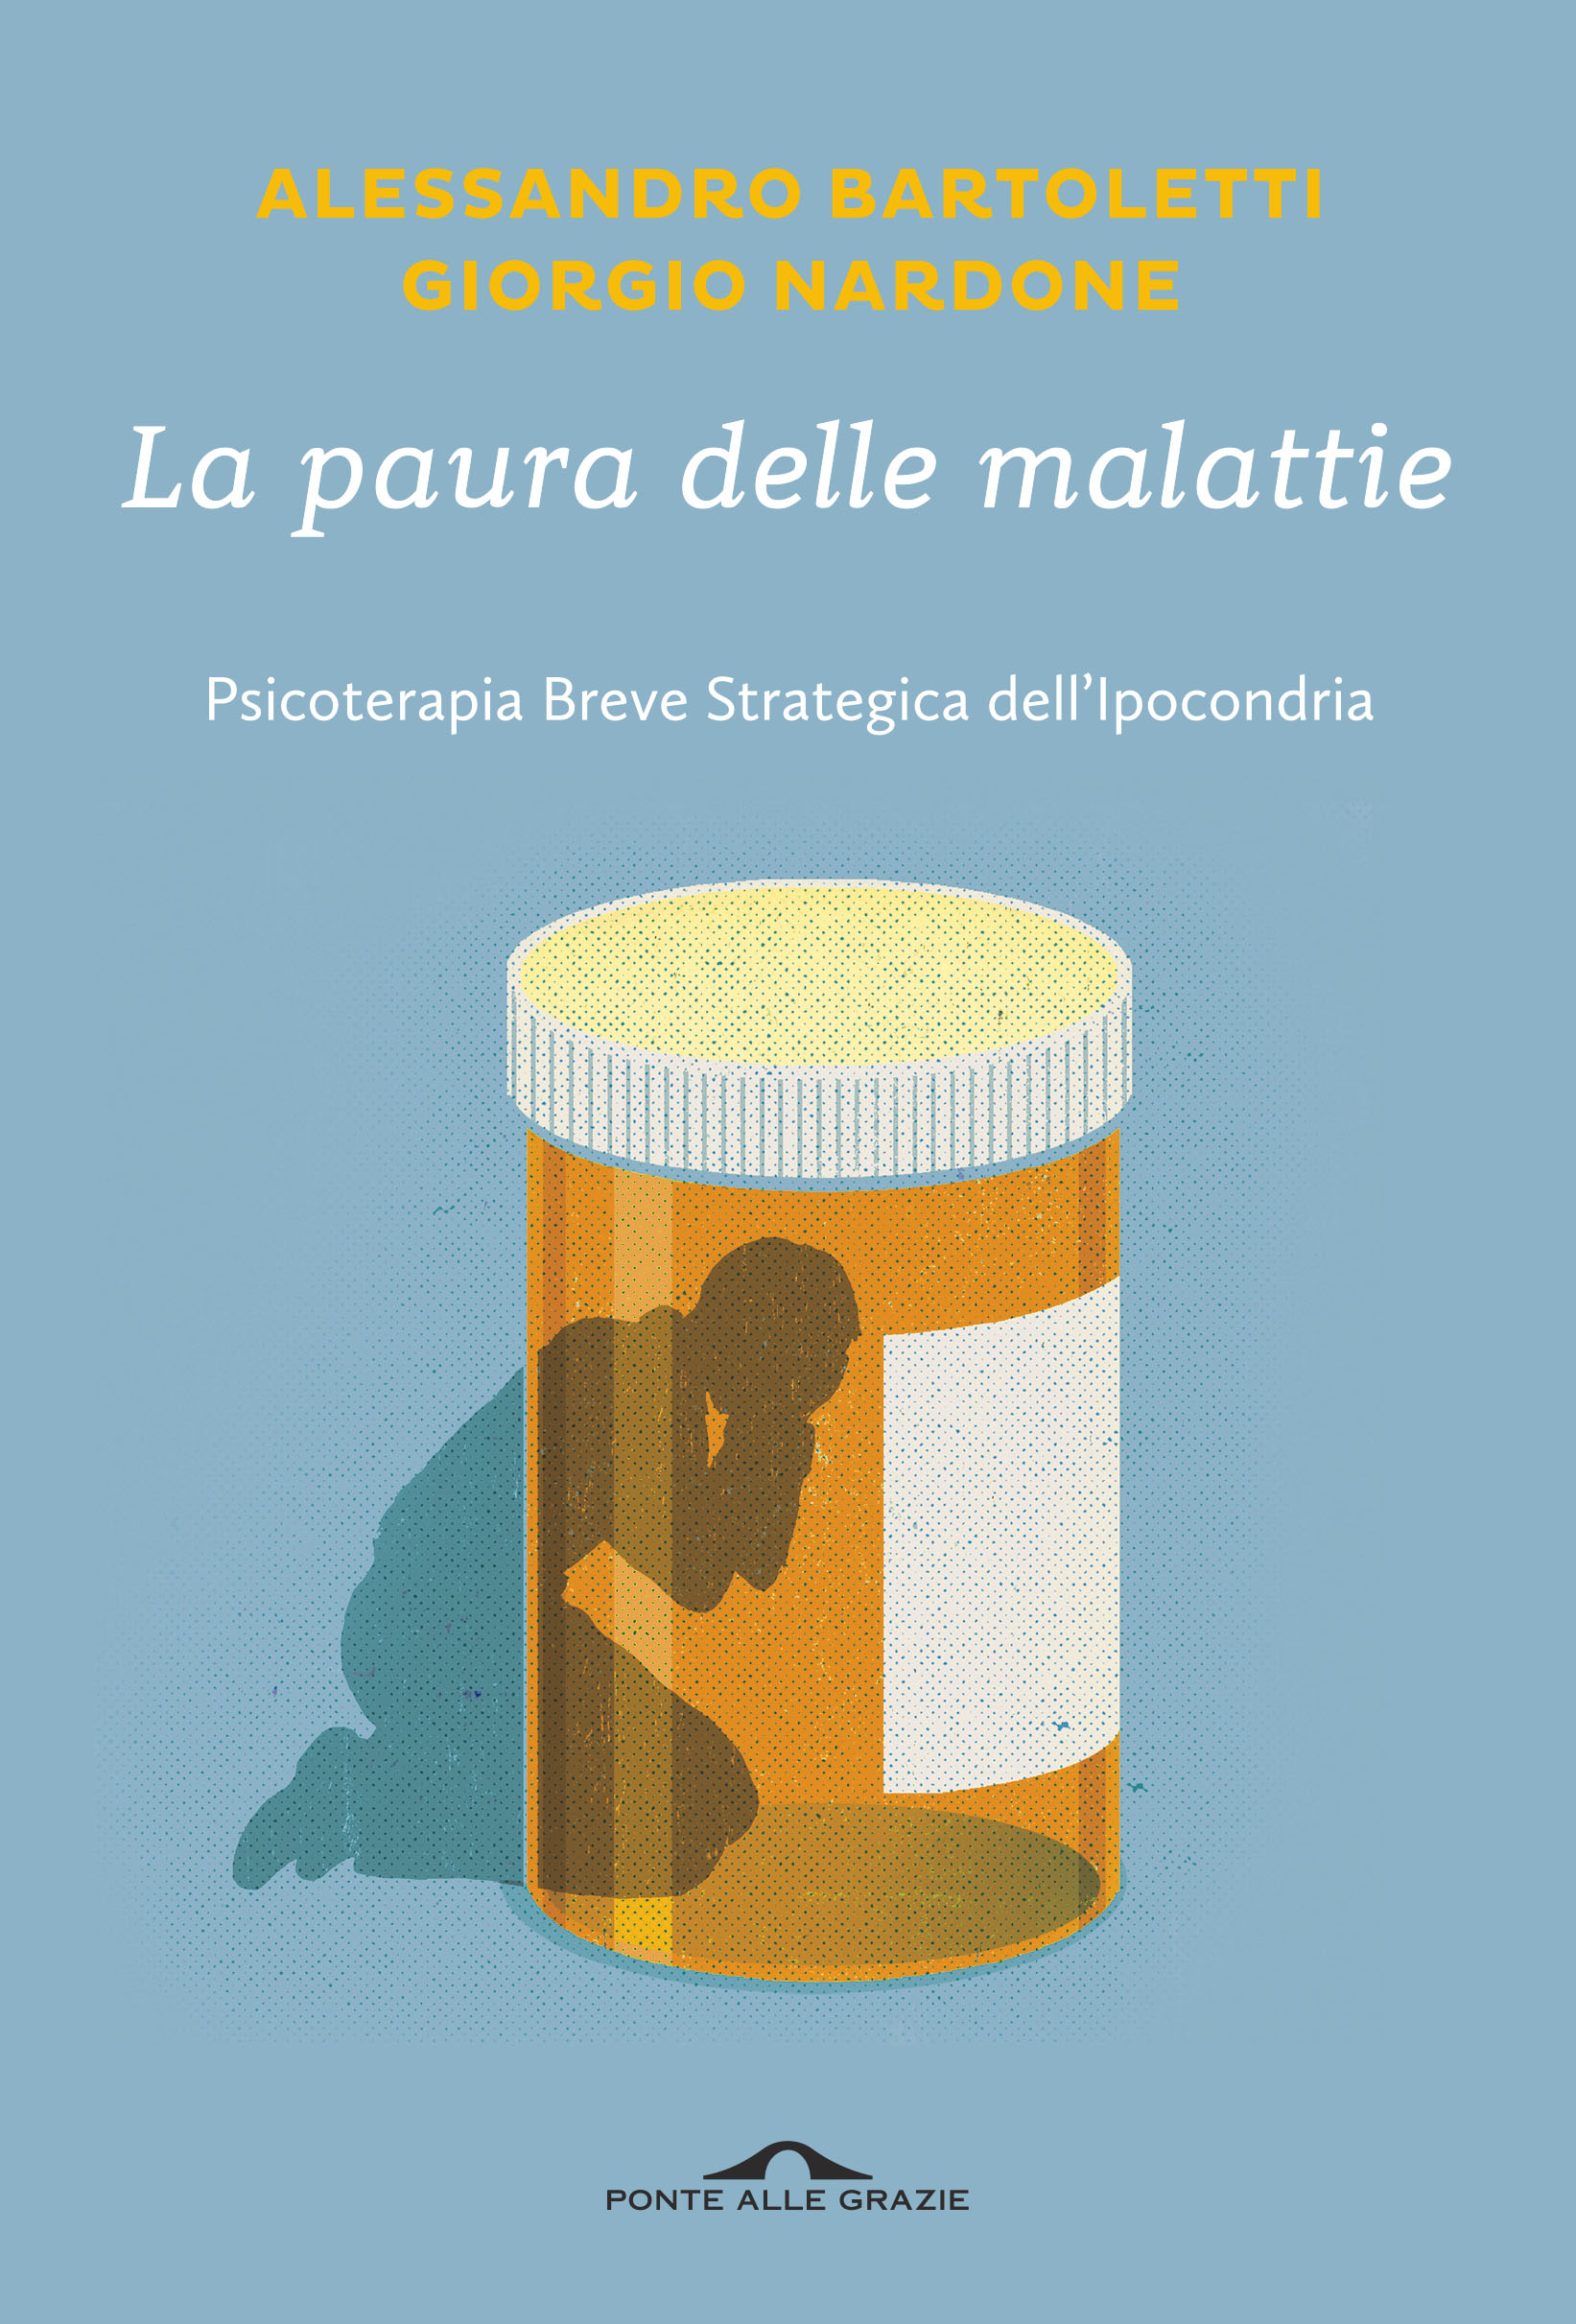 Conferenza: La Paura delle Malattie – con Giorgio Nardone e Alessandro Bartoletti